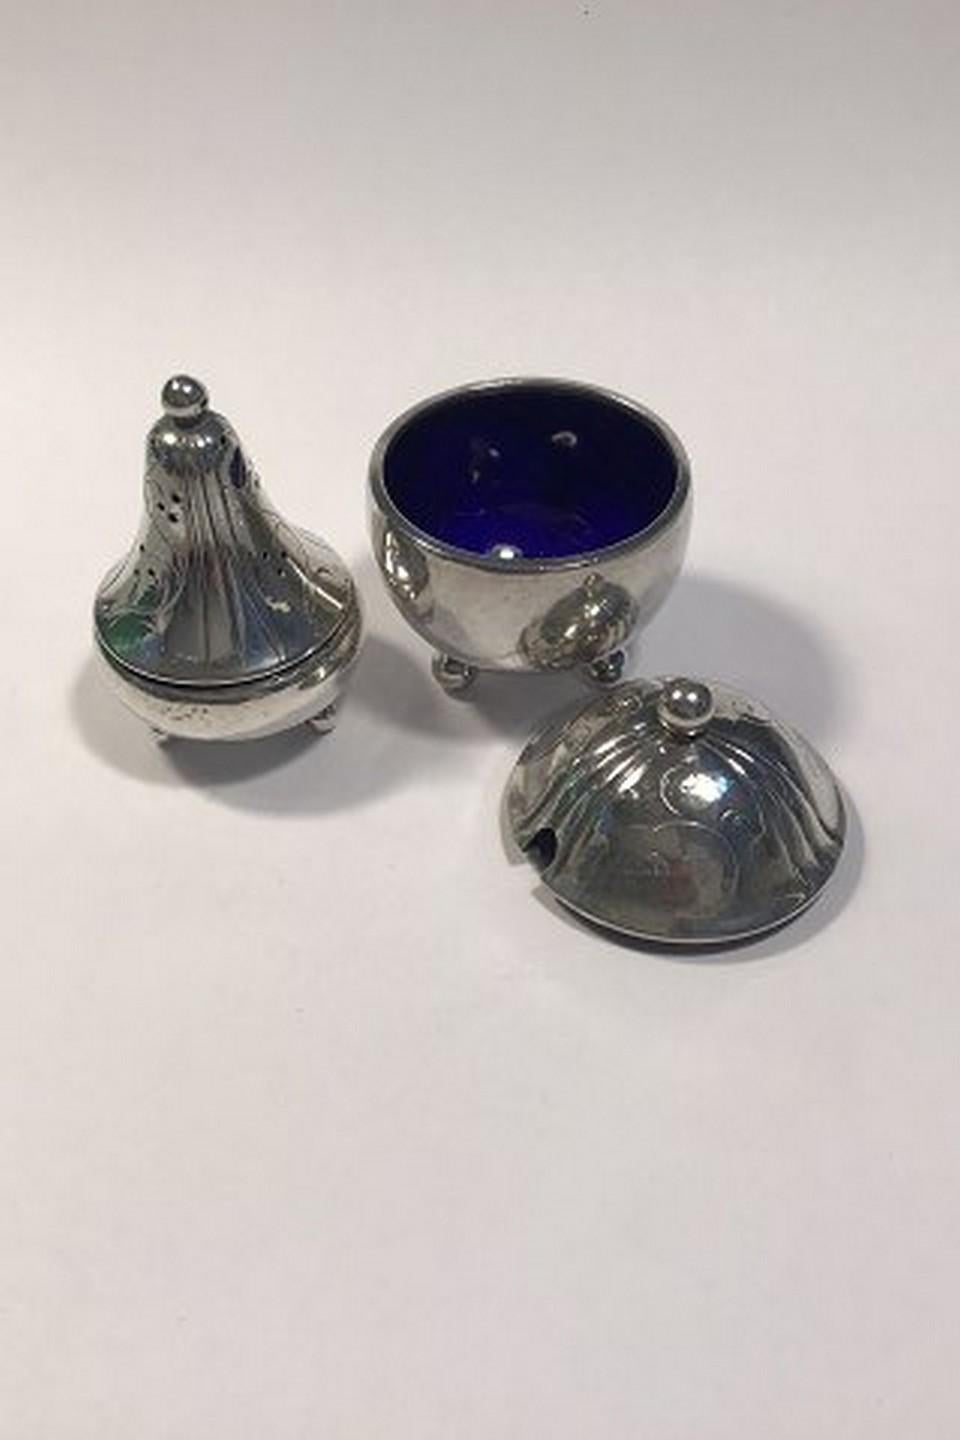 Georg Jensen sterling silver salt and pepper set no 433 1925-1933 blue enamel H 5 cm/2